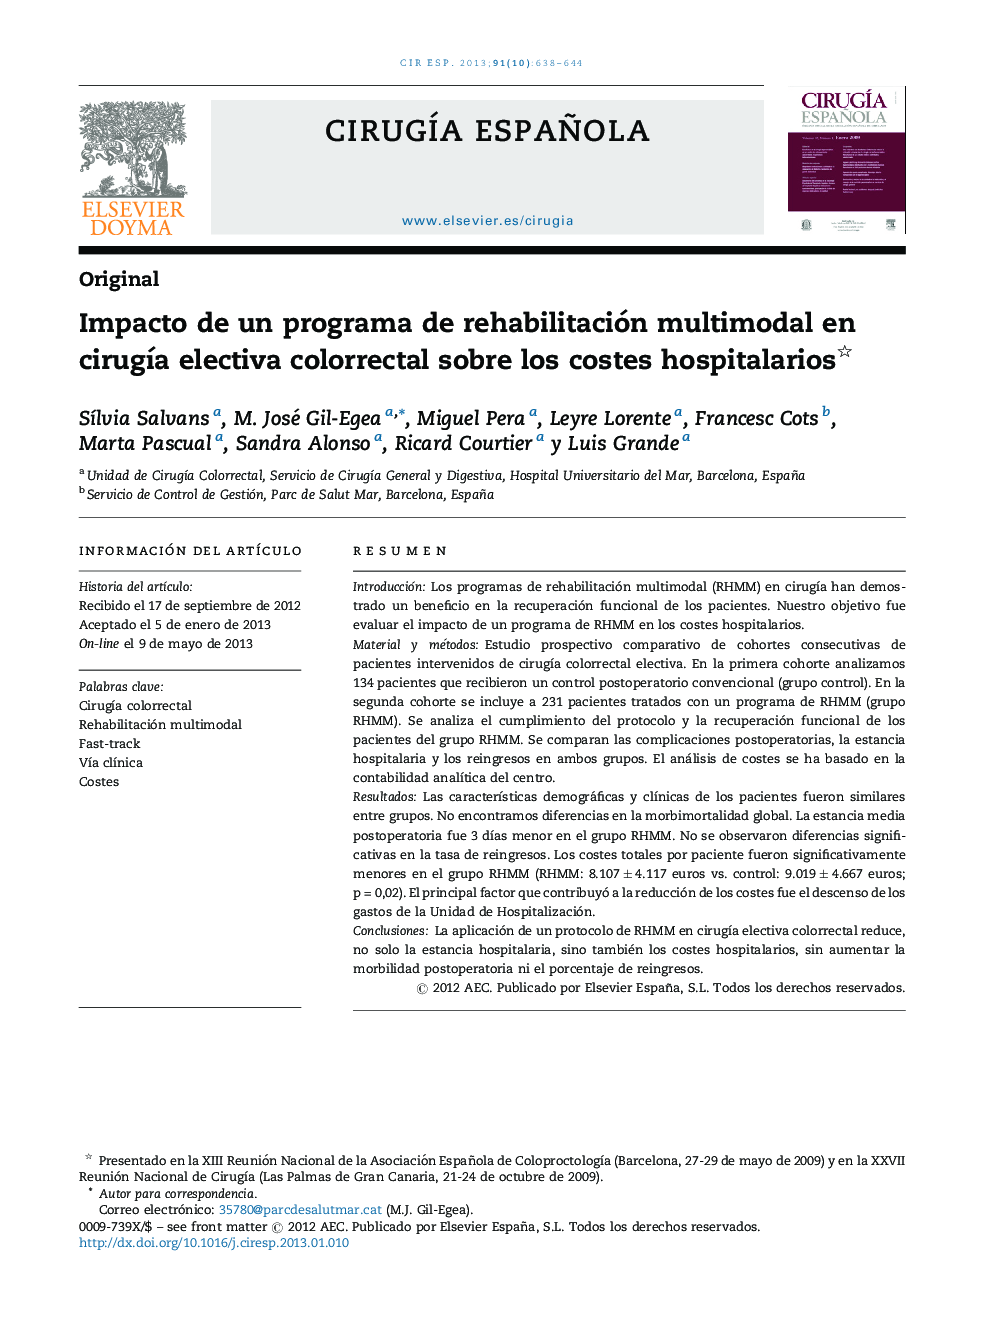 Impacto de un programa de rehabilitación multimodal en cirugía electiva colorrectal sobre los costes hospitalarios 